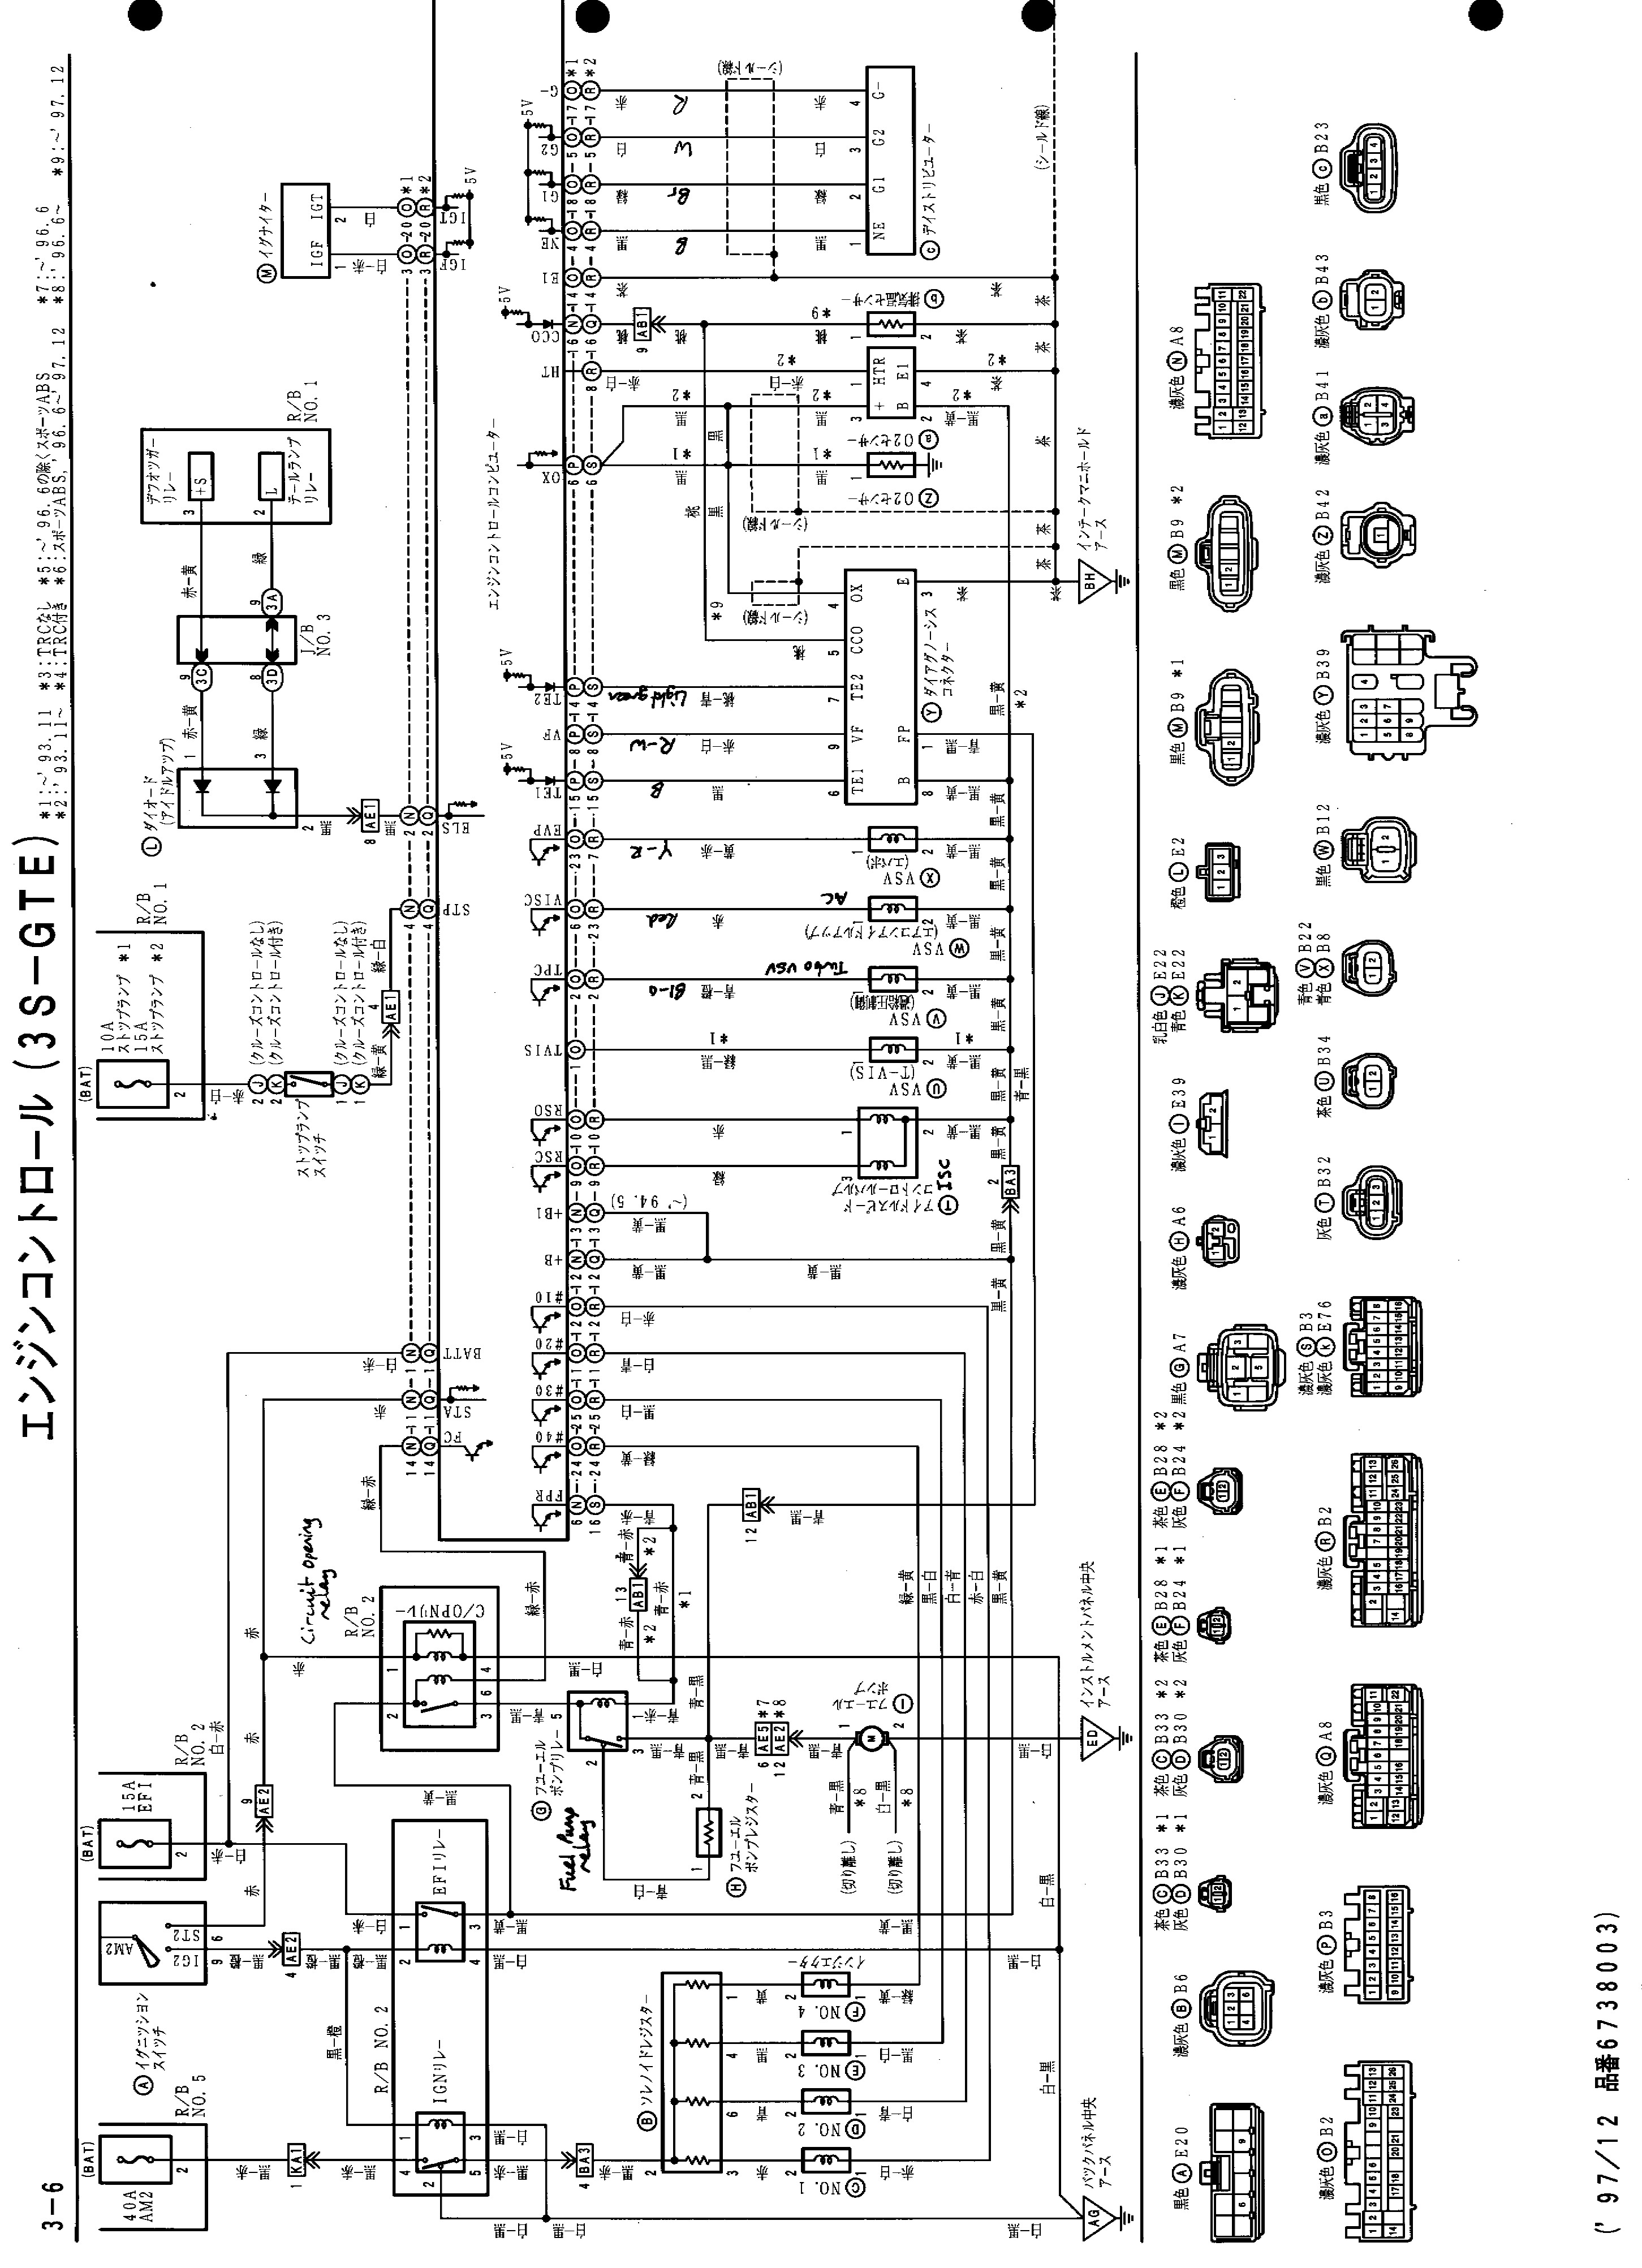 94 toyota 4runner Engine Diagram Wire Diagram Further Schematic Wiring Diagram Besides Ecu Wiring Of 94 toyota 4runner Engine Diagram